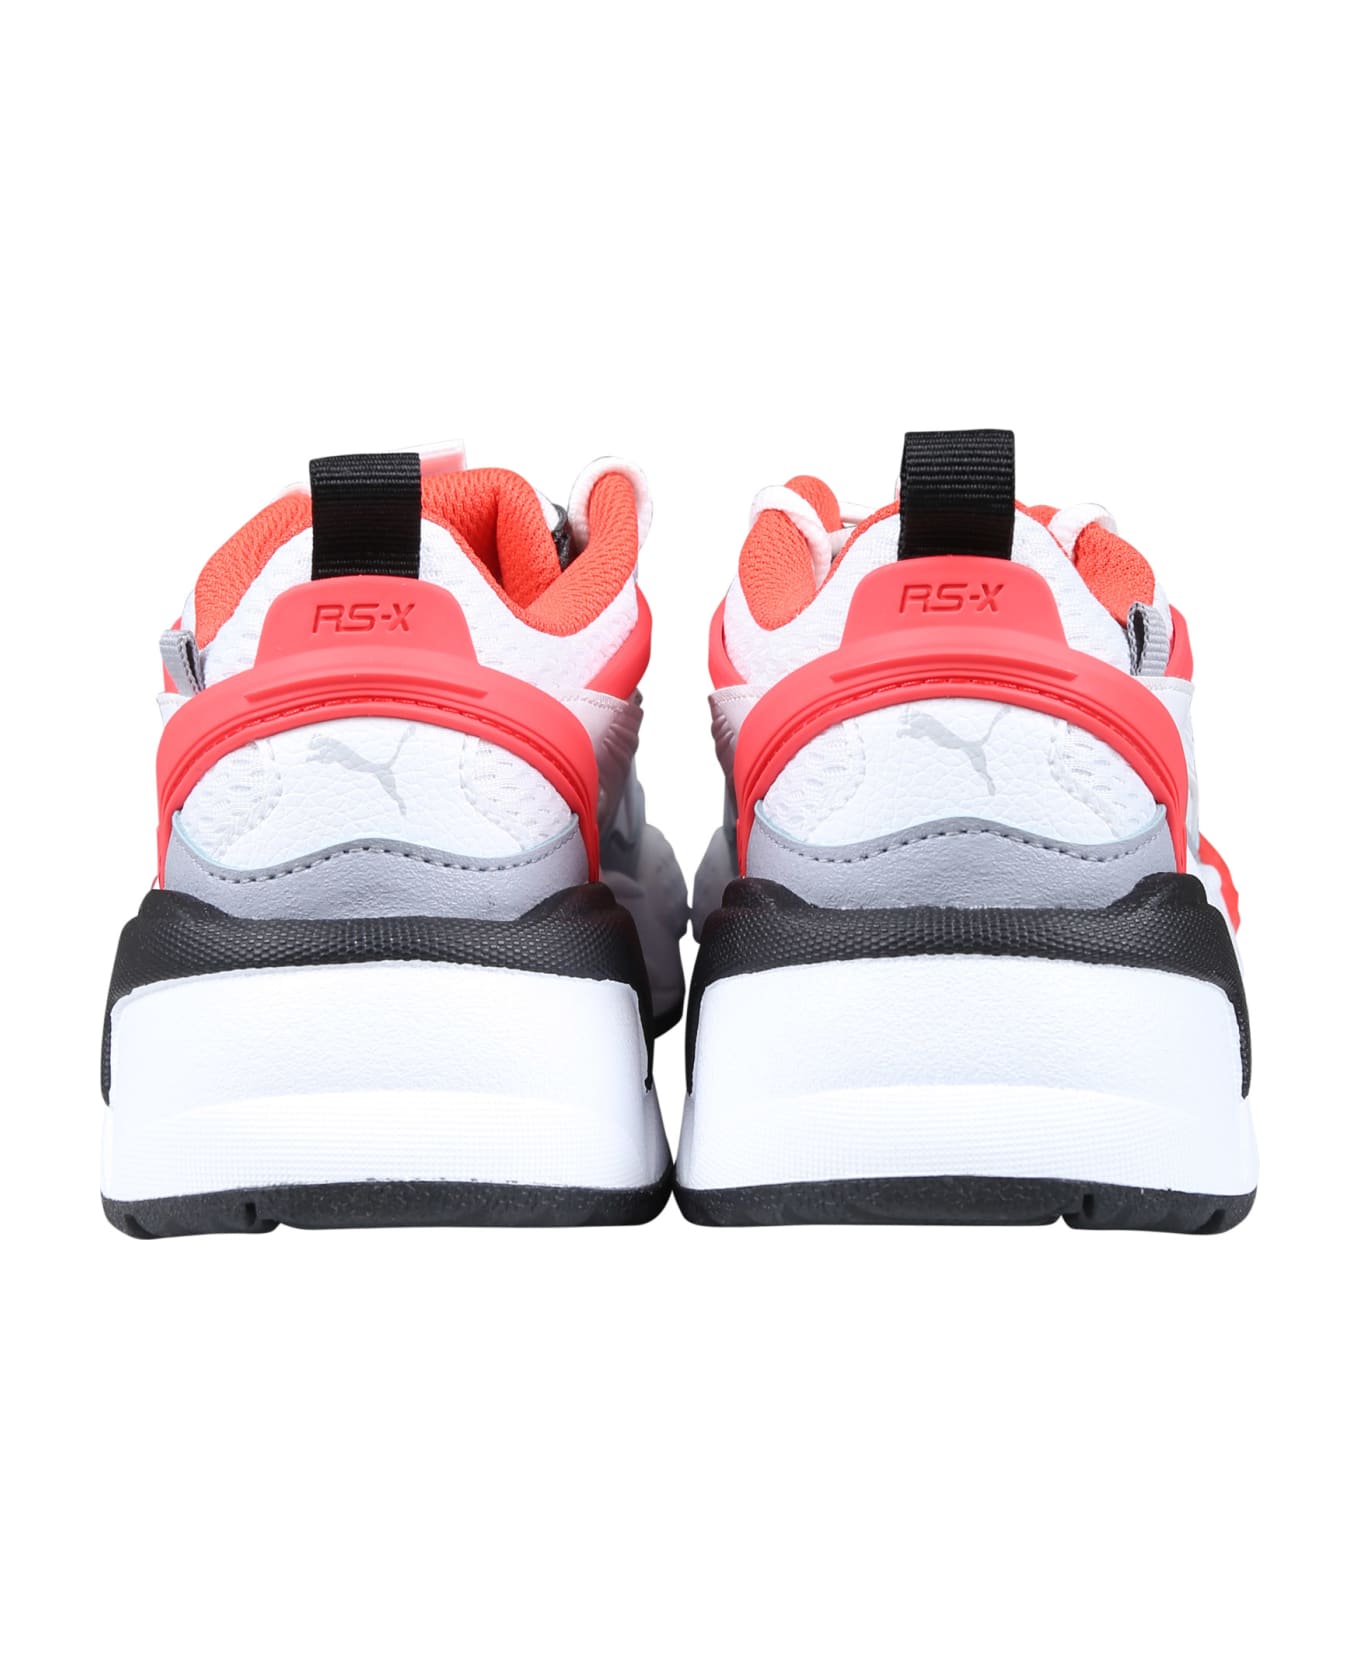 Puma Rs Efekt White Low Sneakers For Boy - White シューズ